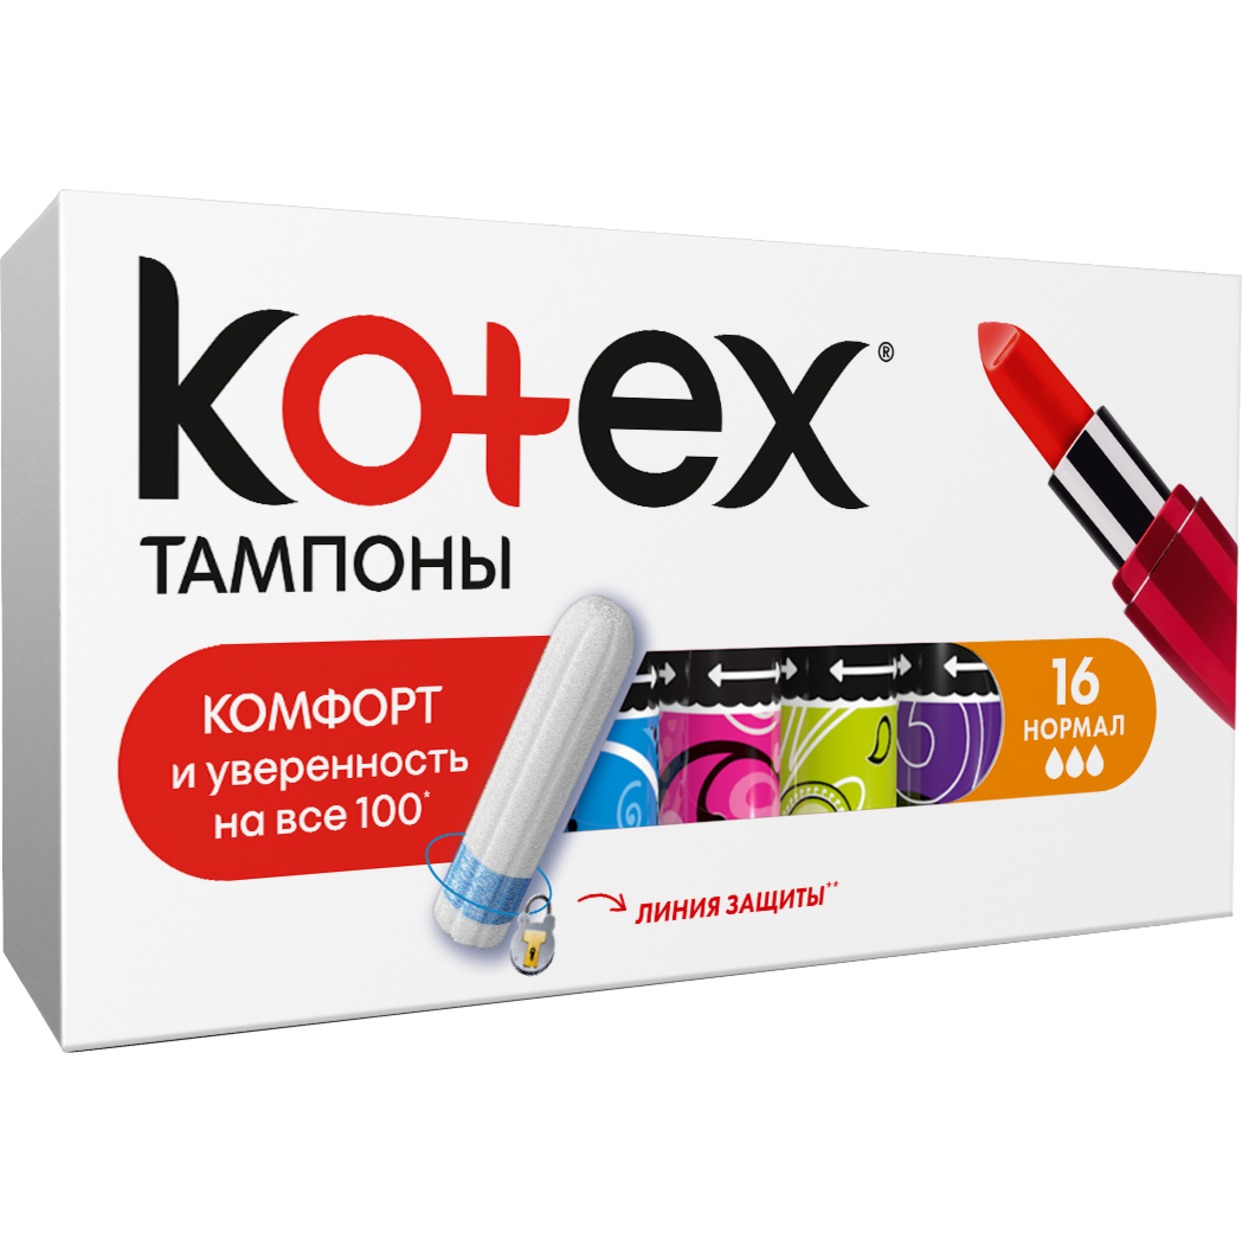 KOTEX Тампоны NORMAL 16шт по акции в Пятерочке